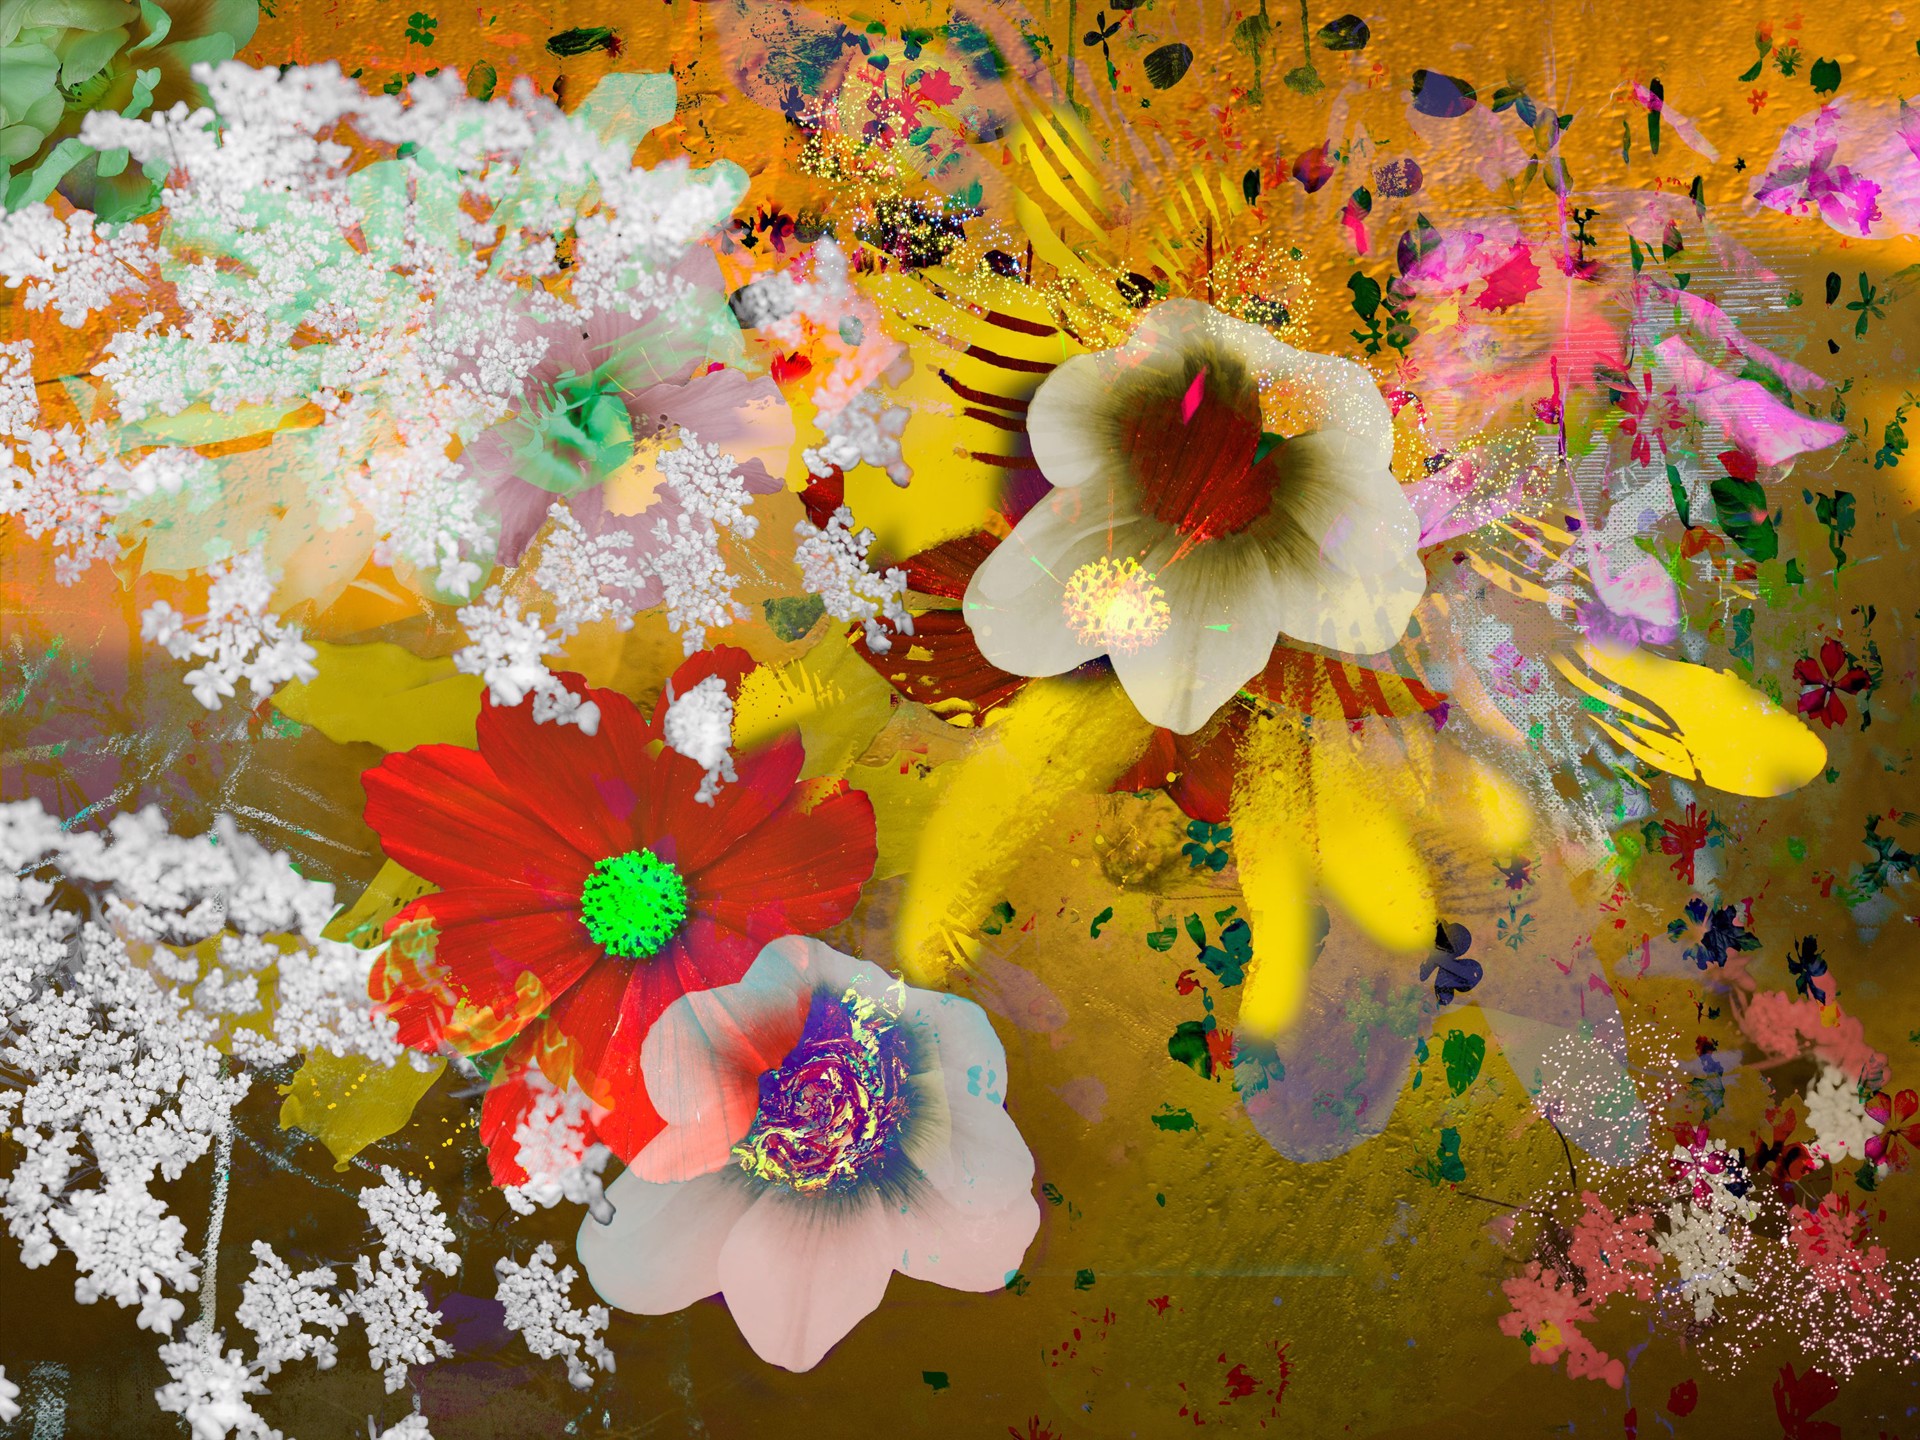 FLOWERS SERIES II NO. 13 by CAROL EISENBERG